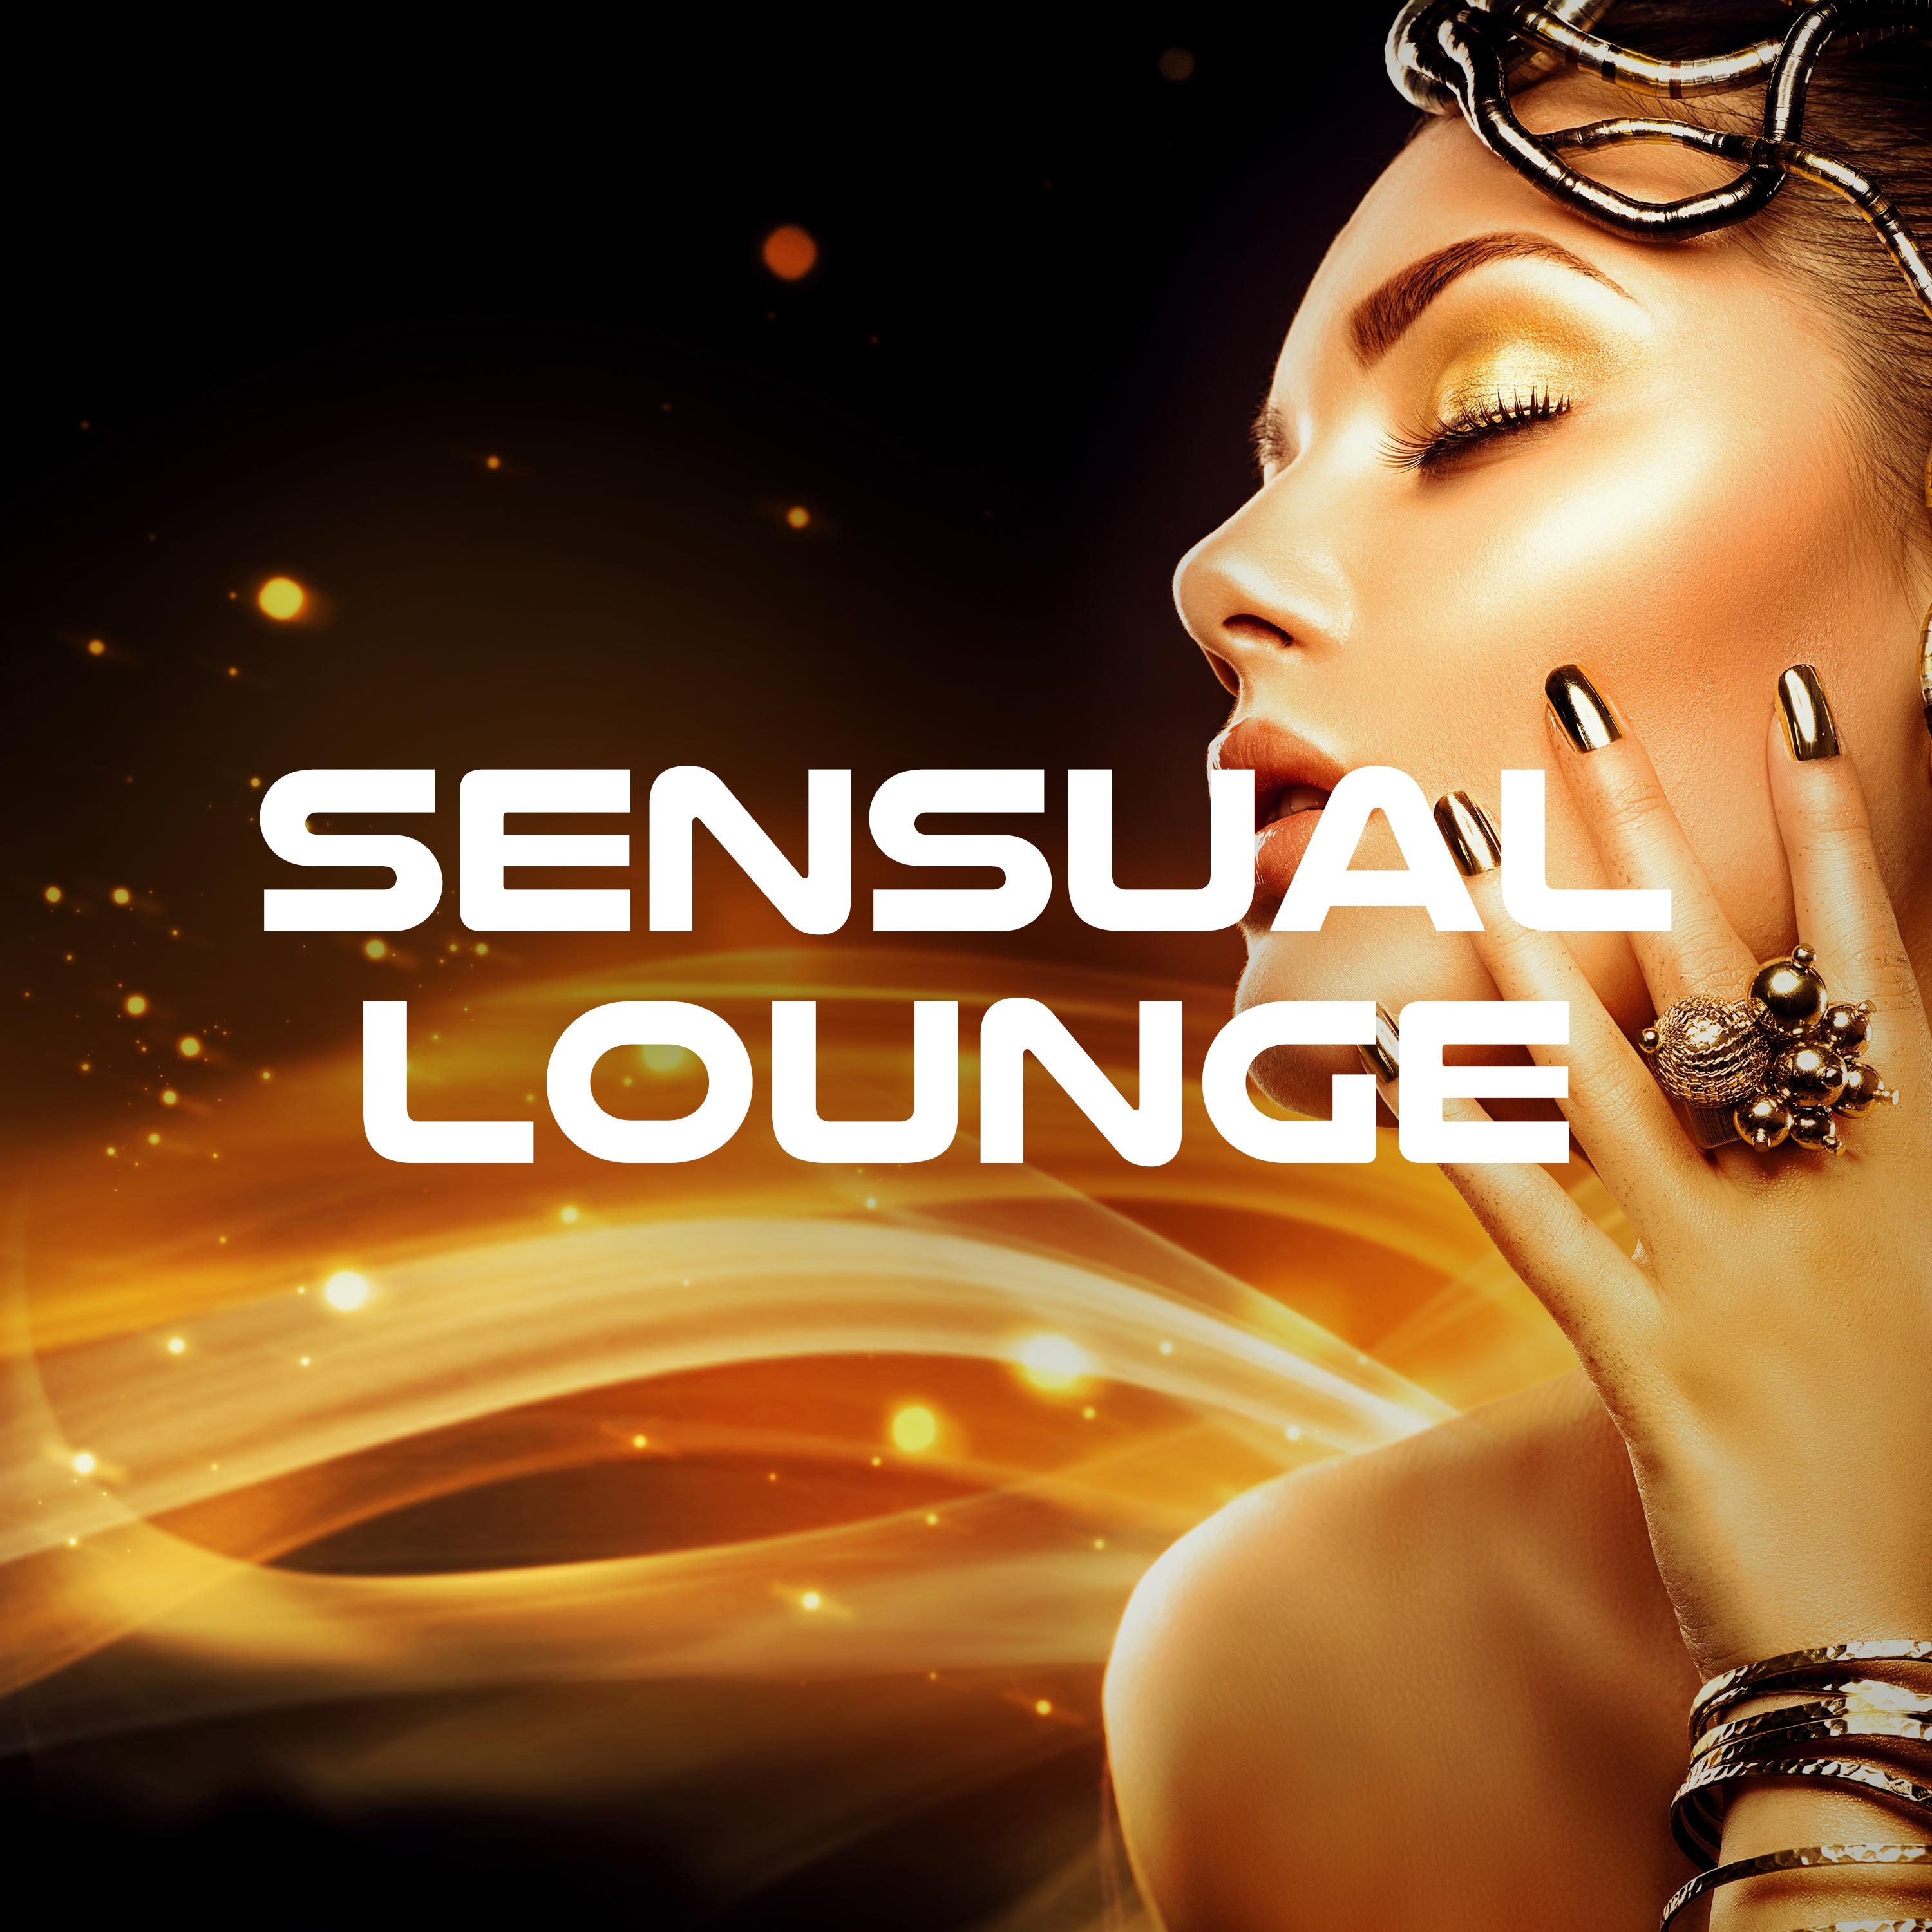 Sensual Lounge Striptease